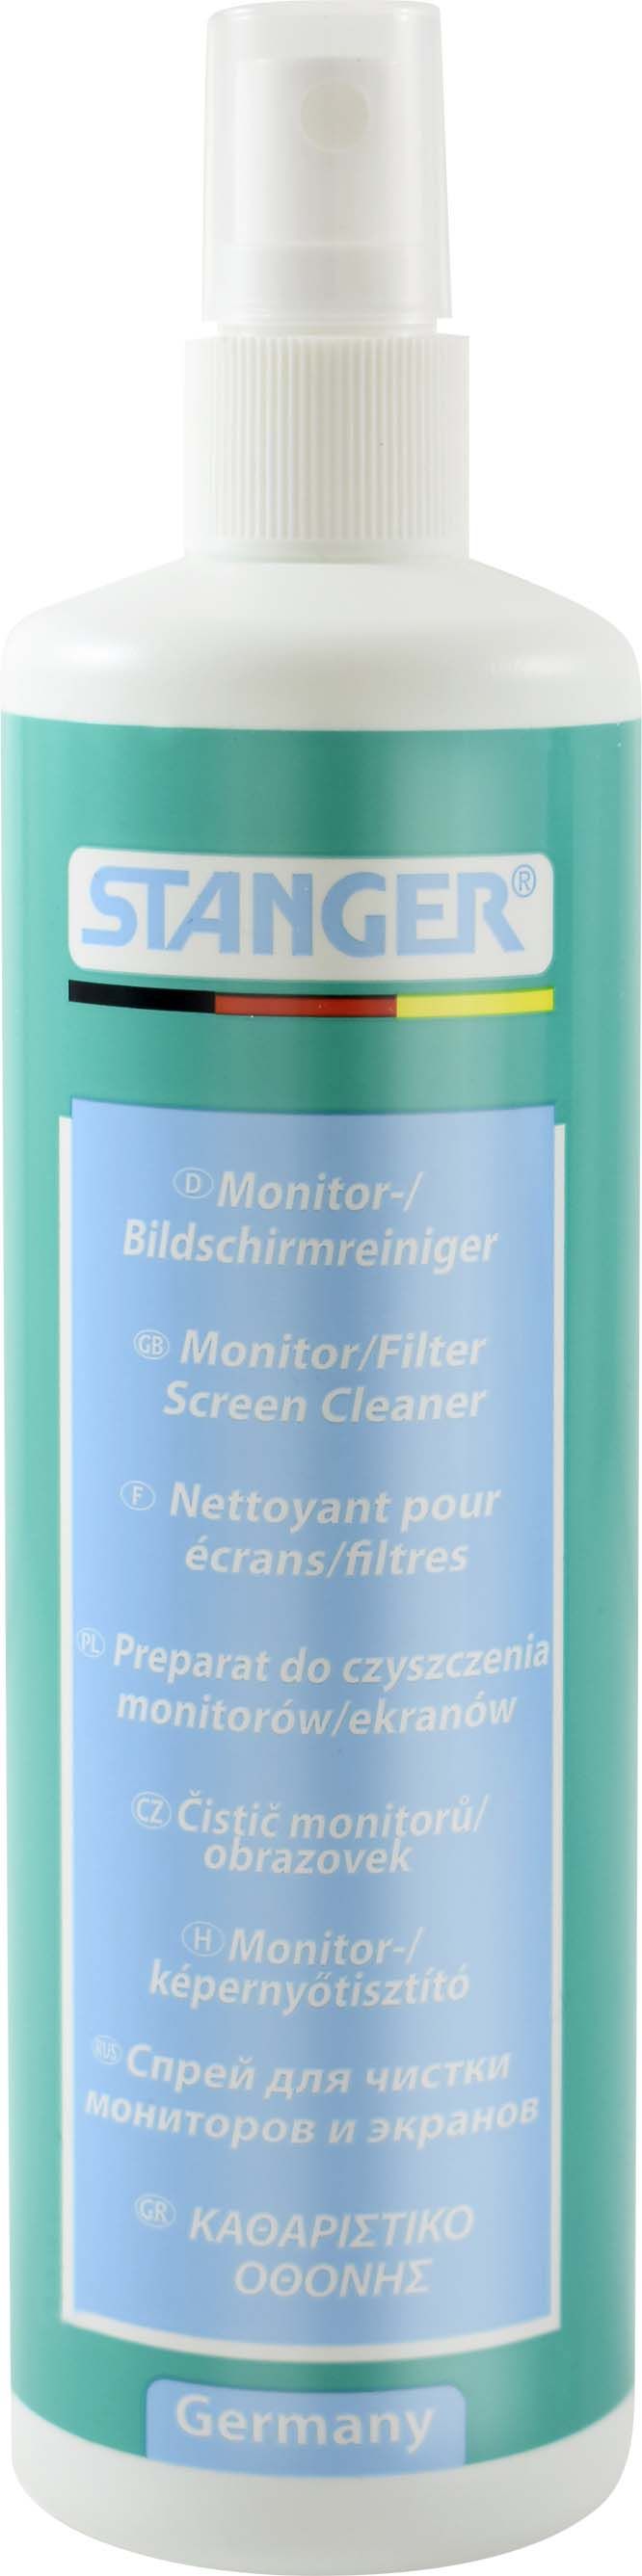 Spray curatare monitor Stanger – 250 ml sanito.ro